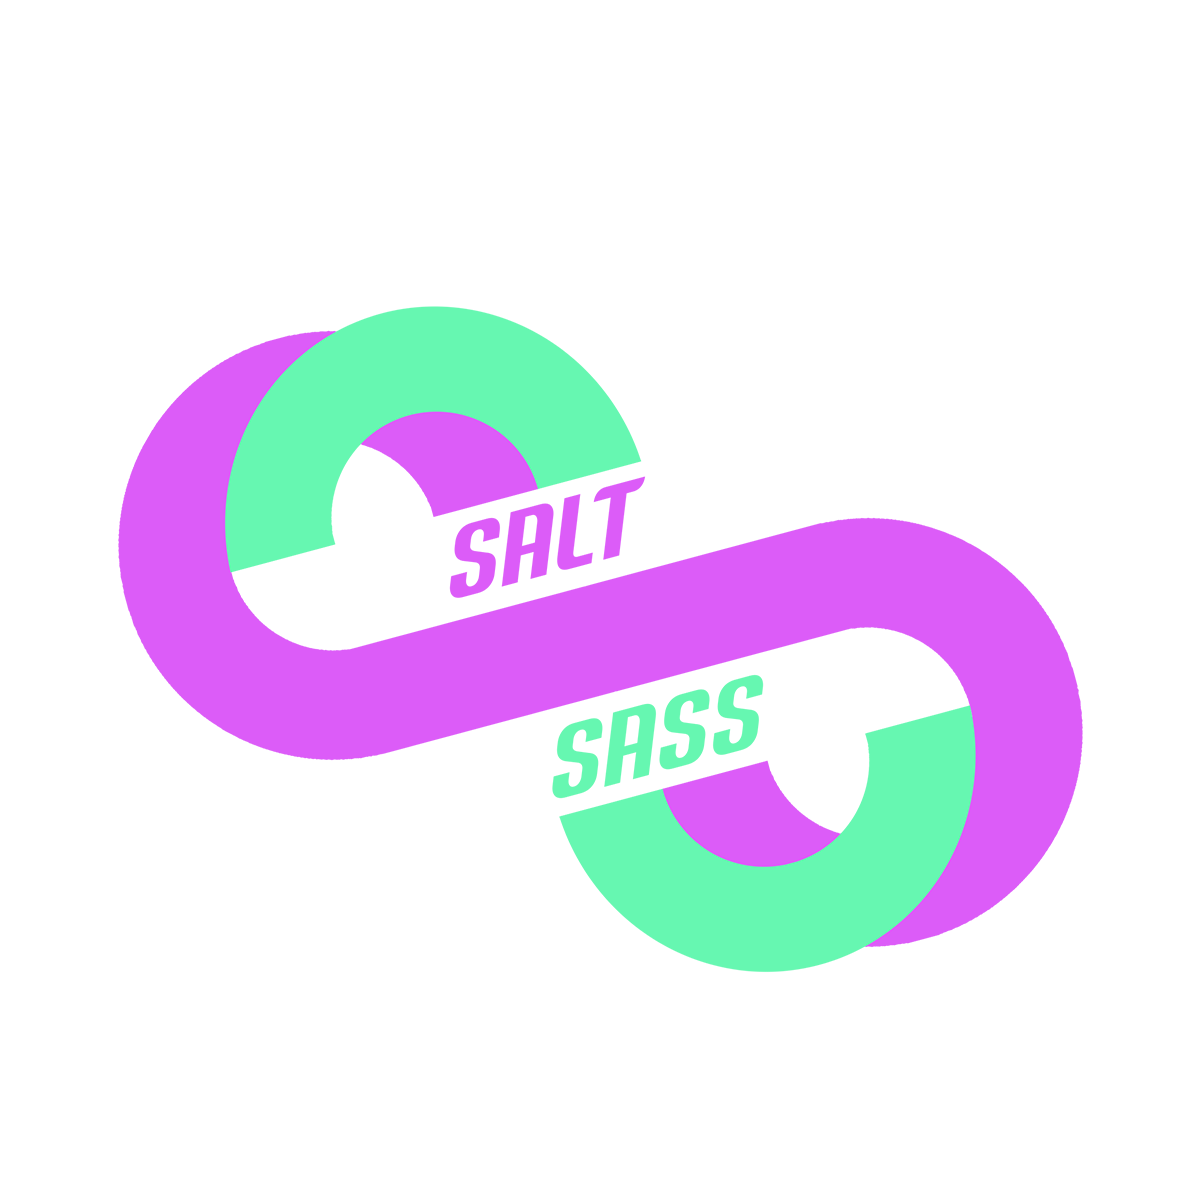 Salt and Sass